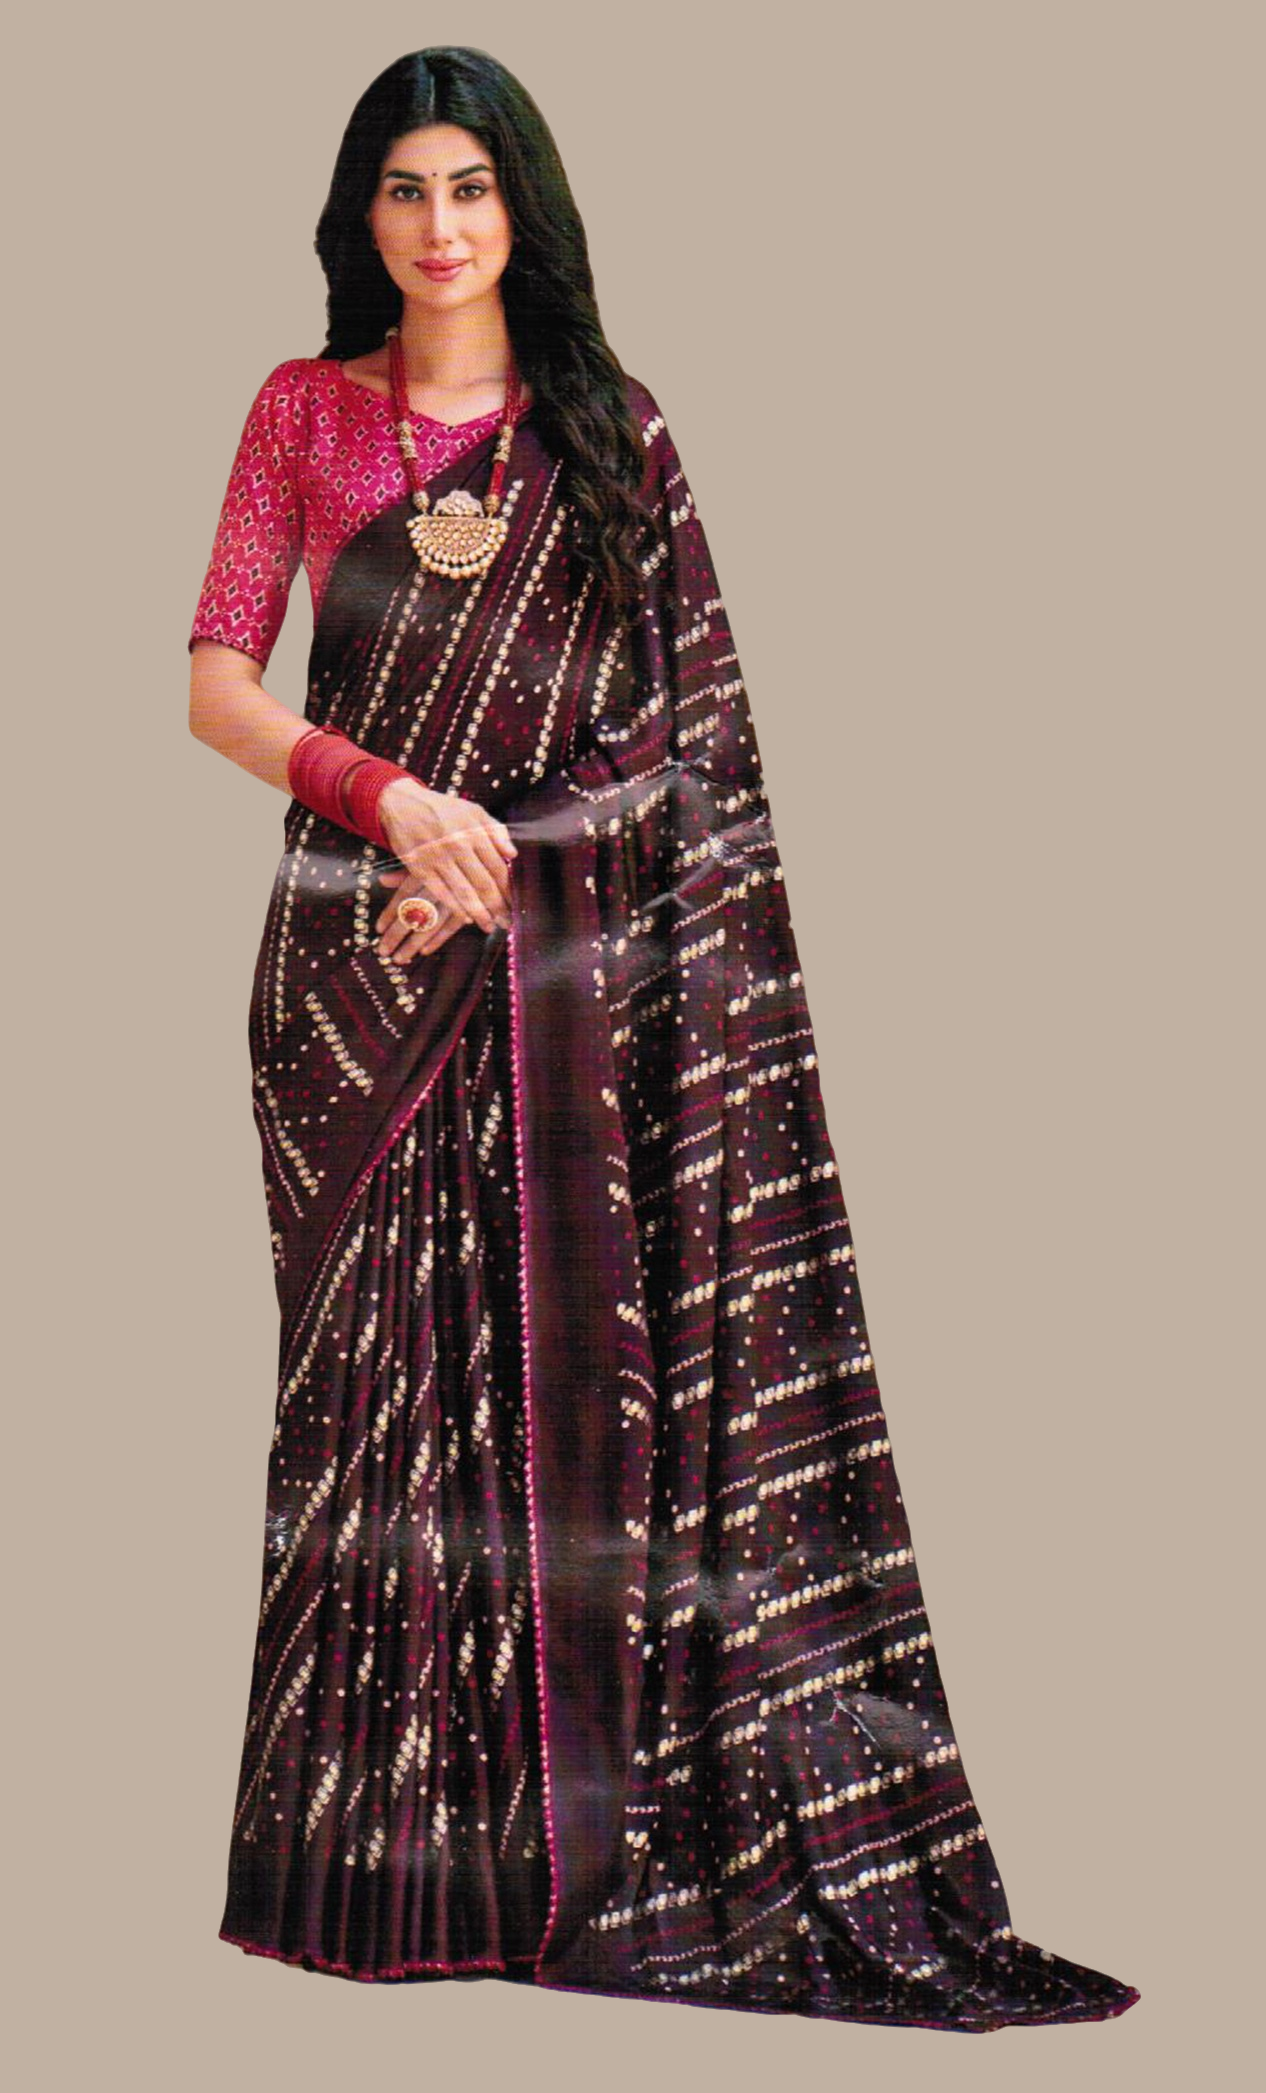 Plum Printed Sari